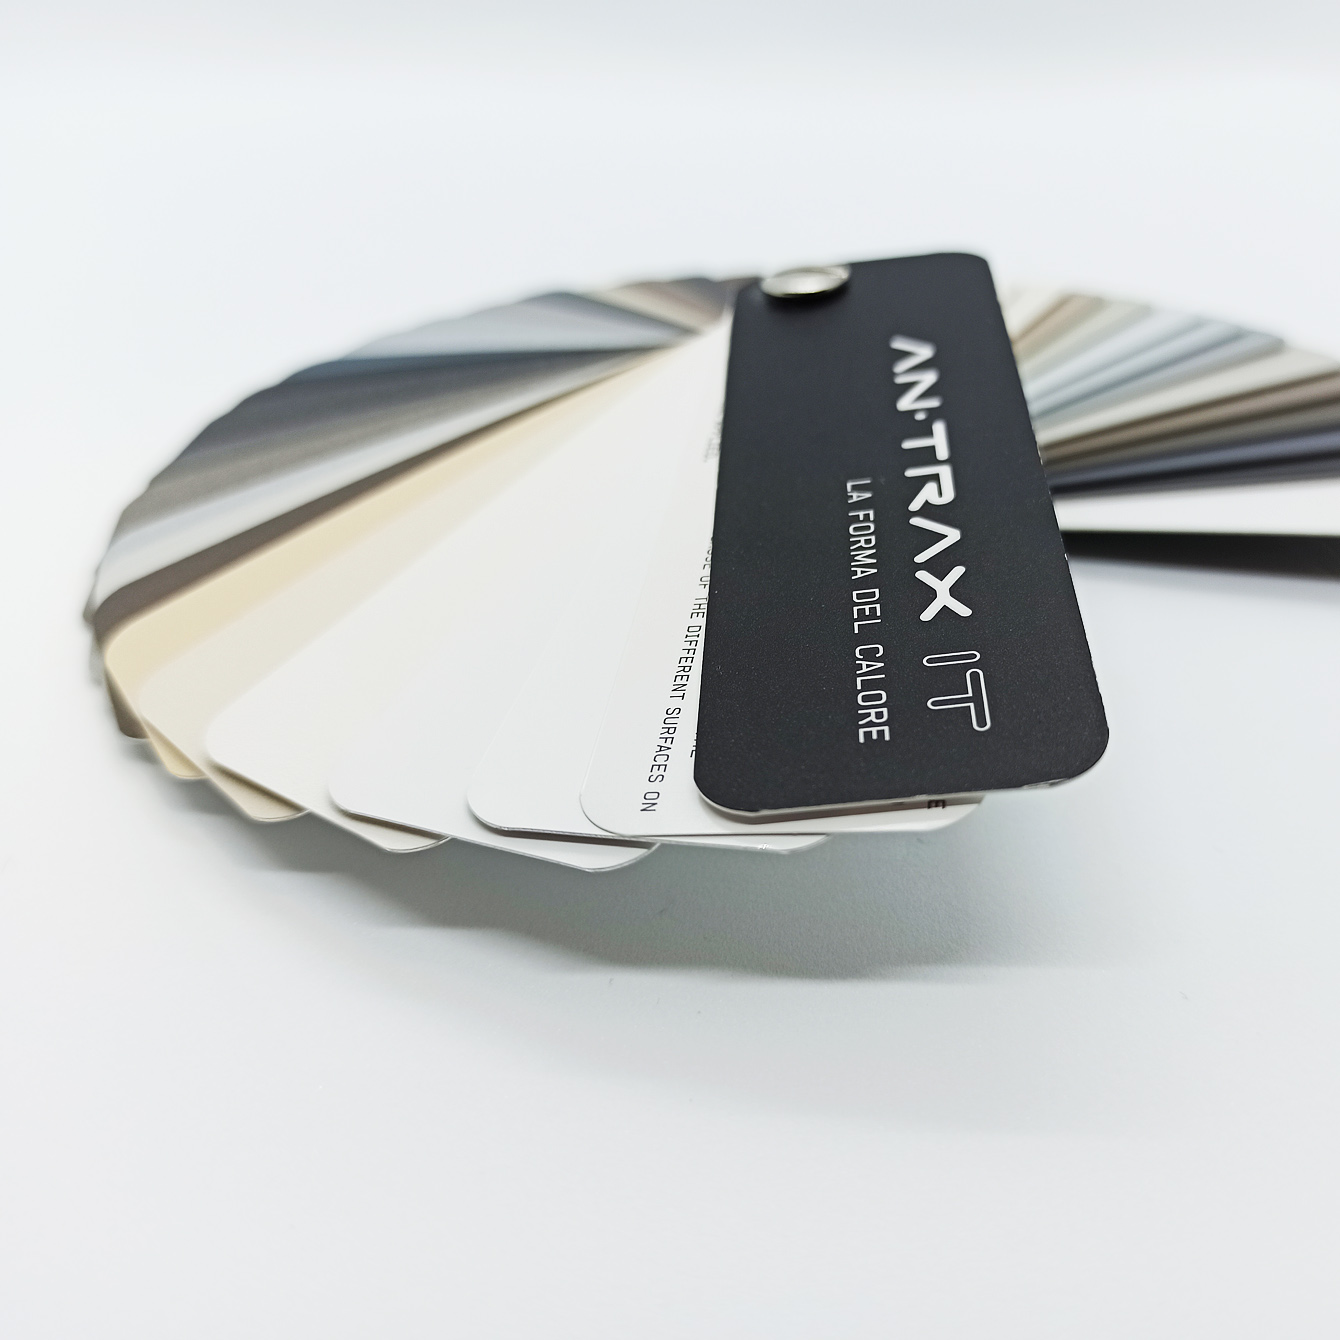 Blade Luxe - Exklusive ANTRAX IT Aluminium-Designheizung von Lucio Fontana | Radiamo